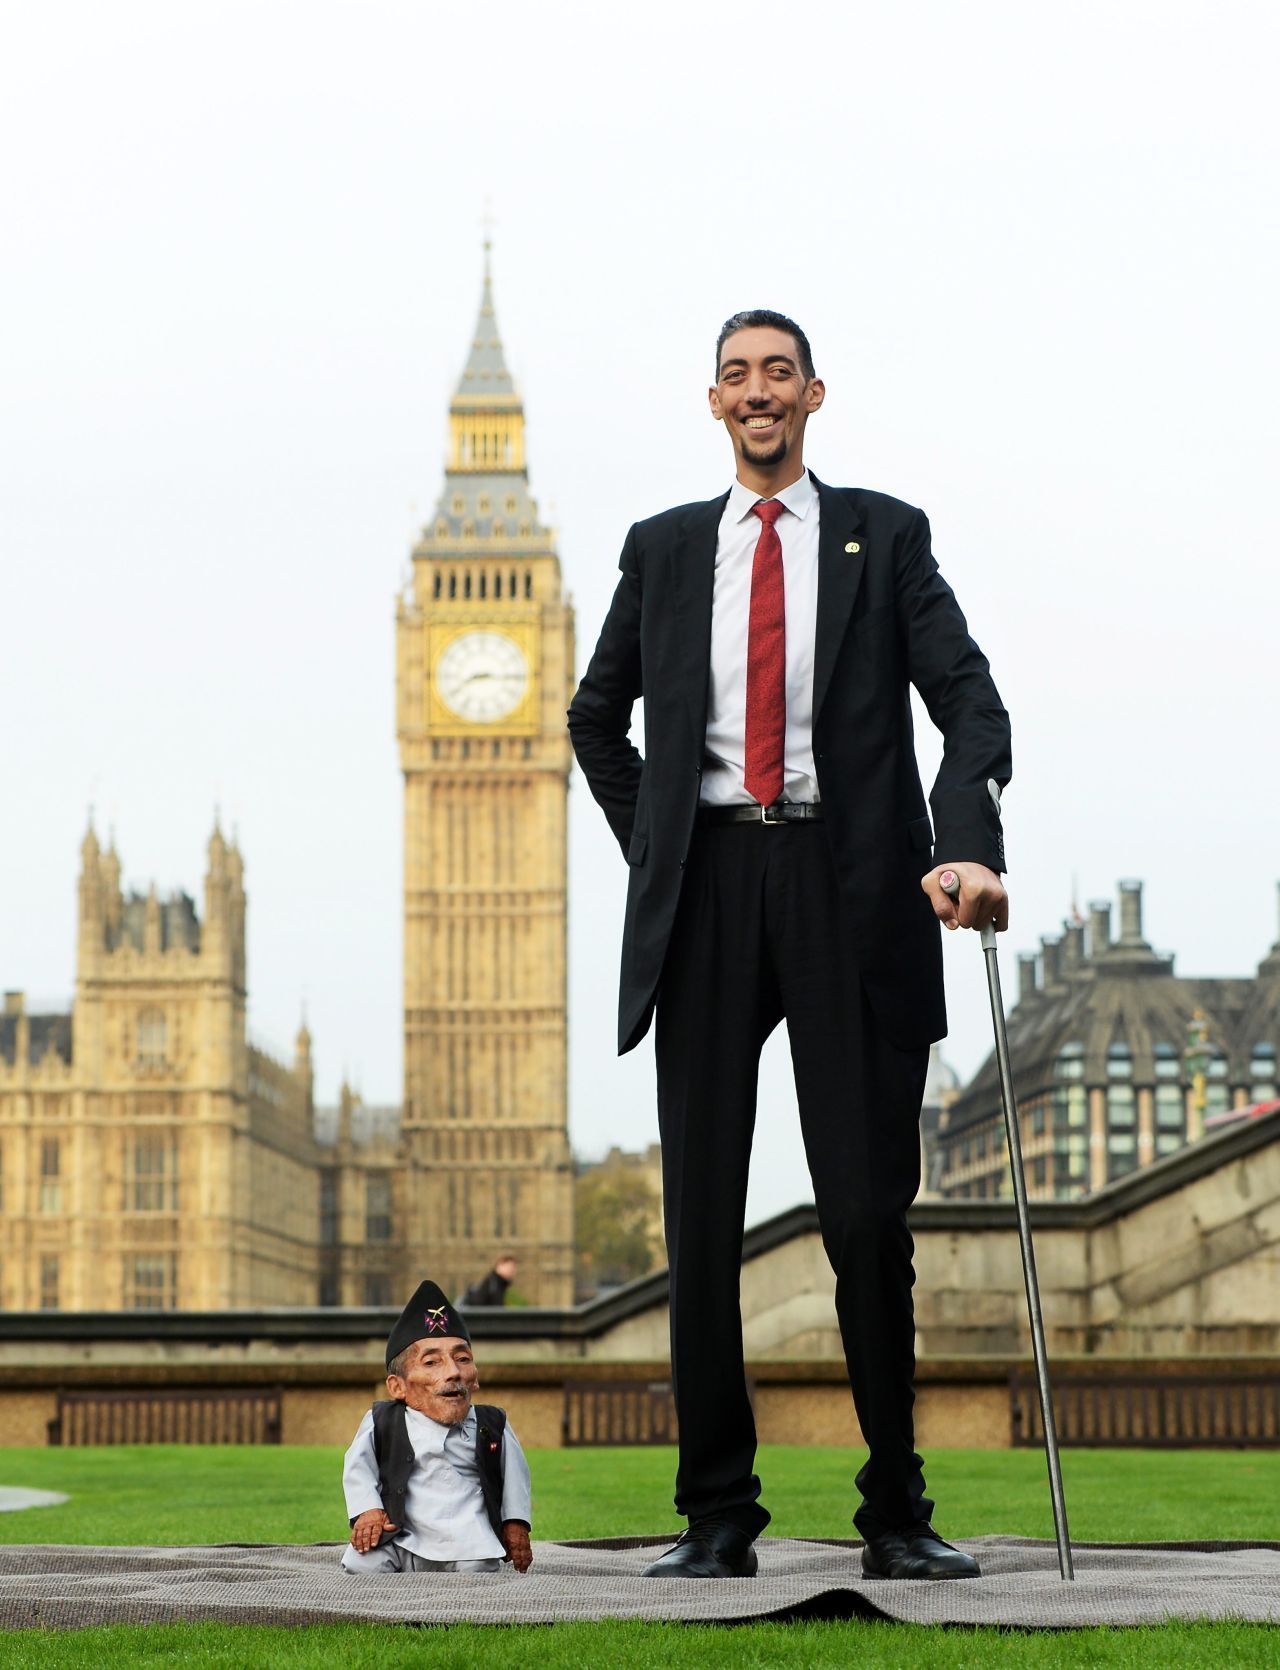 Chandra Bahadur Dangi aus Nepal und Sultan Kösen aus der Türkei posieren für Bilder für die Guinness World Records in London. Kösen ist fast zwei Meter größer als Dangi: Der Nepalese gilt mit einer Körpergröße von 54,6 Zentimeter als der kleinste lebende Mensch.